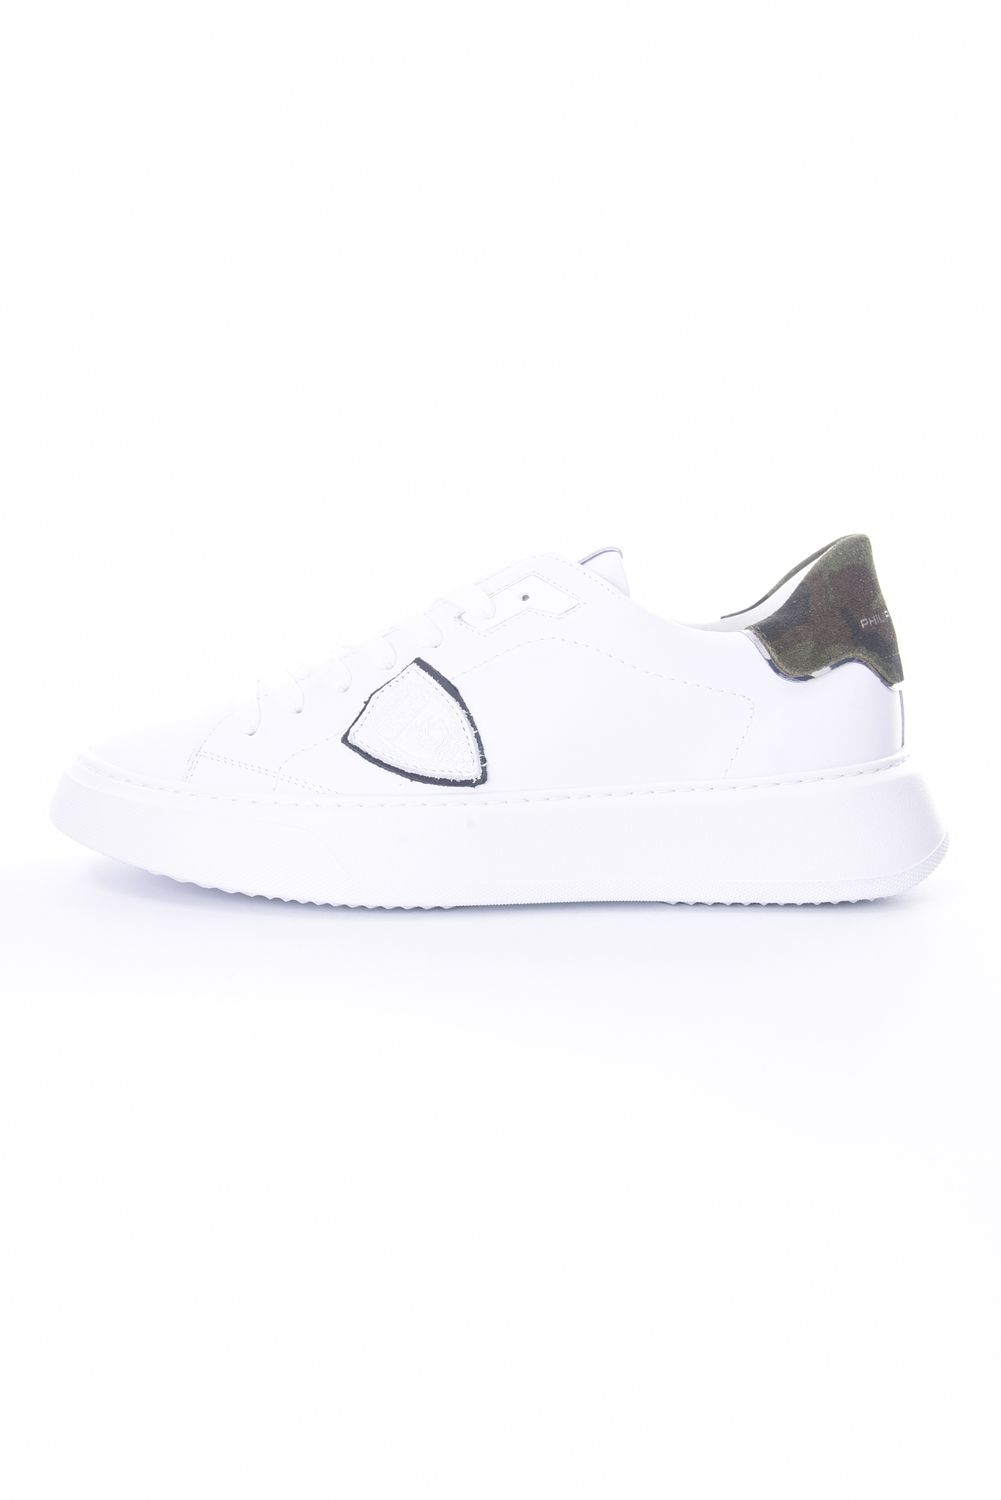 PHILIPPE MODEL PARIS フィリップモデル メンズ TEMPLE LOW スニーカー 靴 イタリア正規品 BTLU VC01 新品 ホワイト